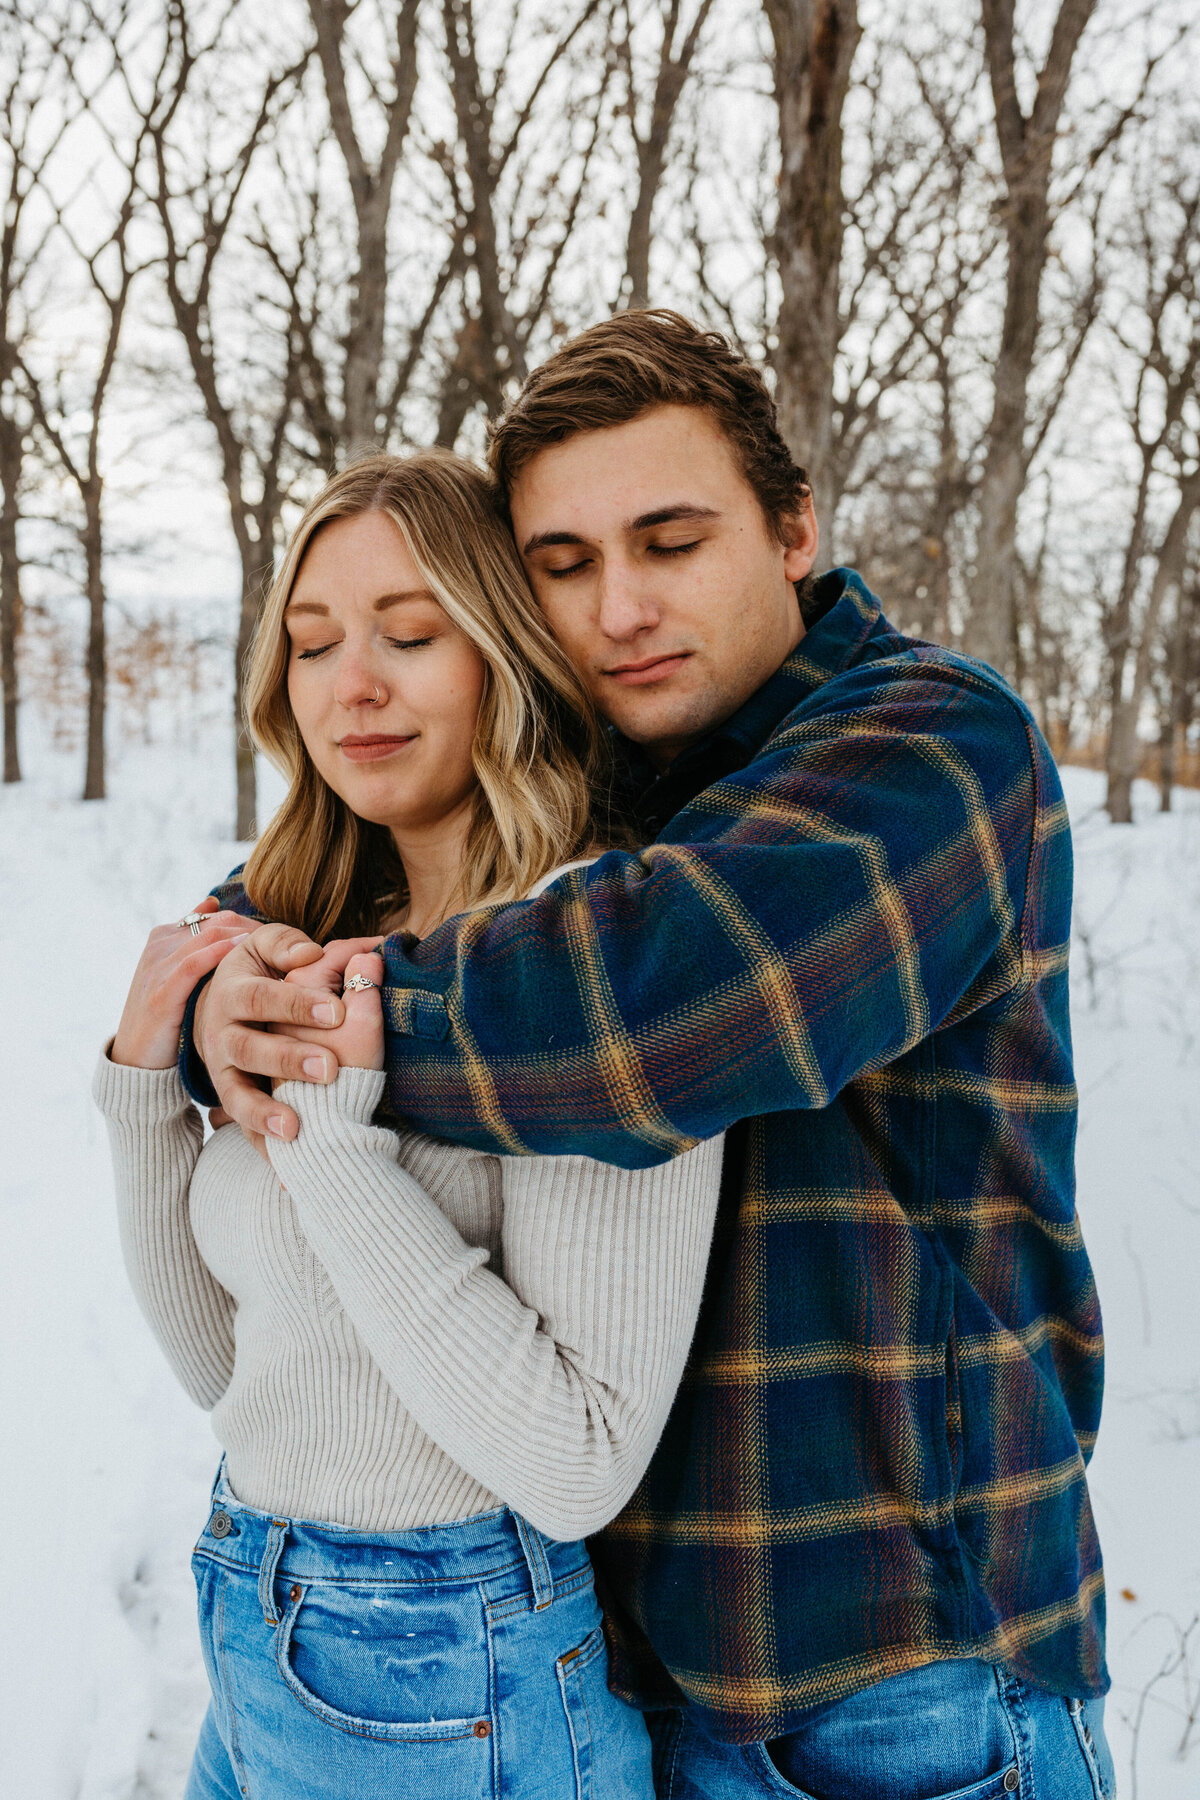 guy-hugging-girl-in-snow